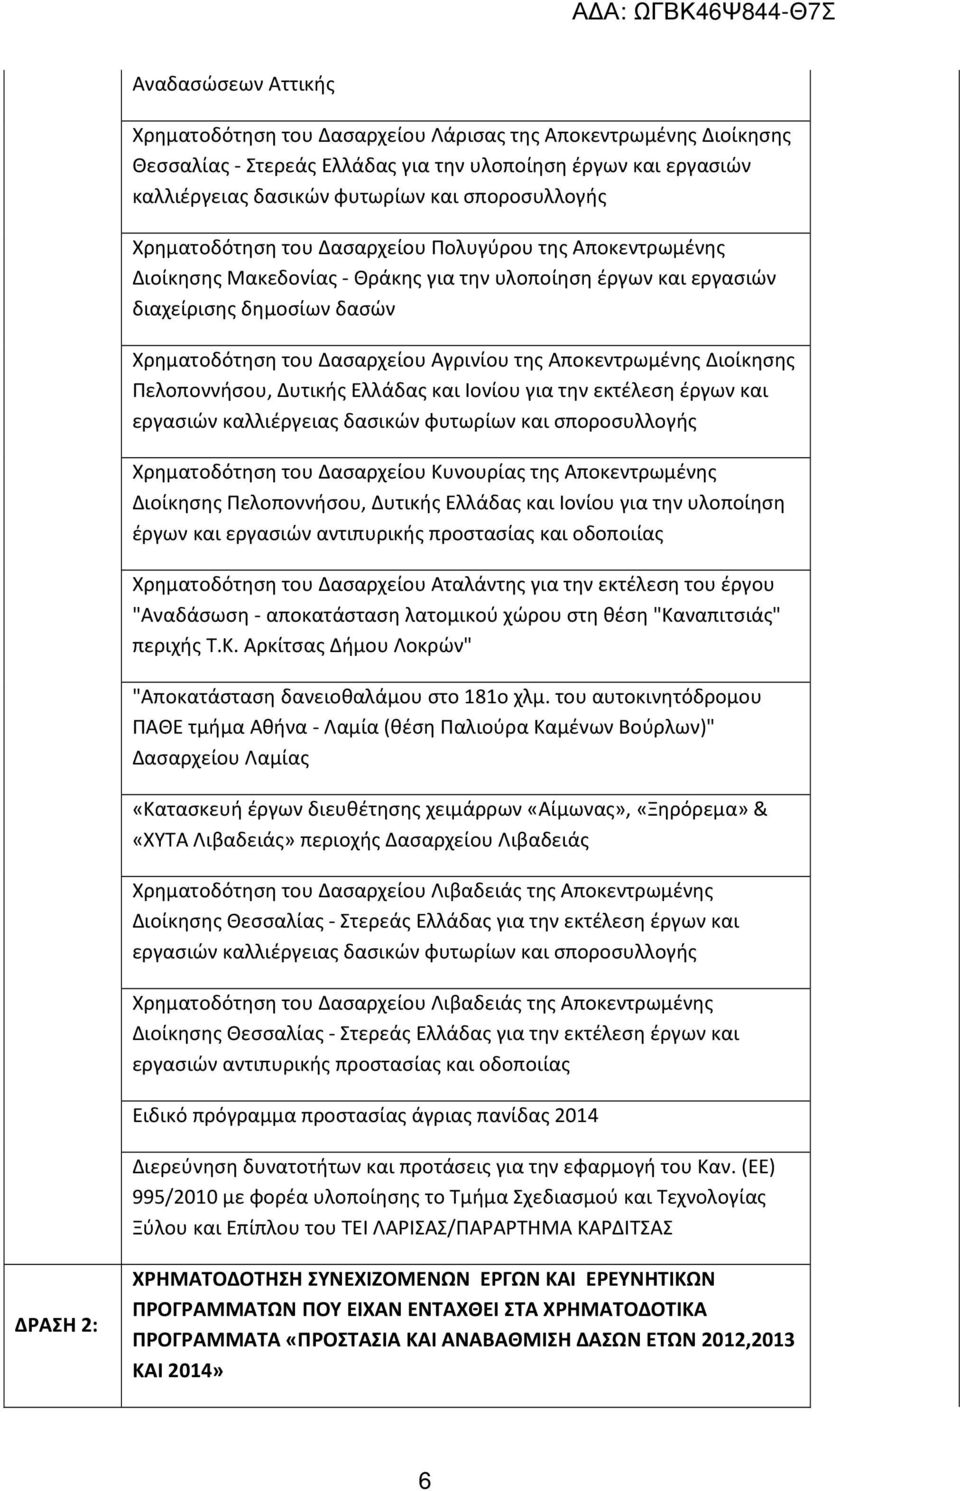 Αποκεντρωμένης Διοίκησης Πελοποννήσου, Δυτικής Ελλάδας και Ιονίου για την εκτέλεση έργων και εργασιών καλλιέργειας δασικών φυτωρίων και σποροσυλλογής Χρηματοδότηση του Δασαρχείου Κυνουρίας της